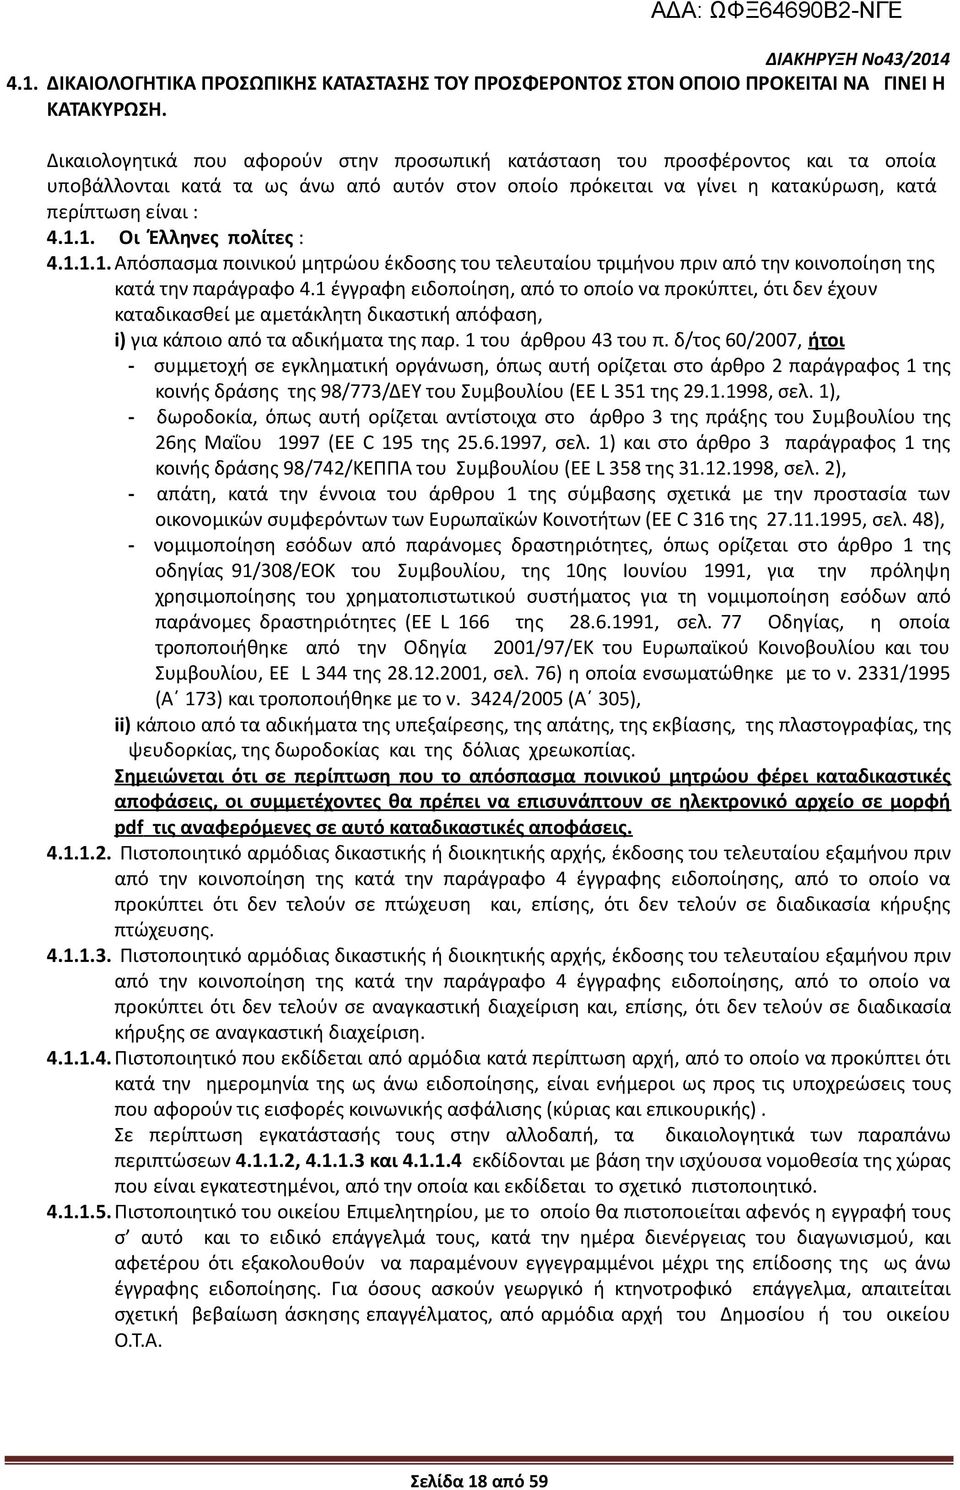 1. Οι Έλληνες πολίτες : 4.1.1.1. Απόσπασμα ποινικού μητρώου έκδοσης του τελευταίου τριμήνου πριν από την κοινοποίηση της κατά την παράγραφο 4.